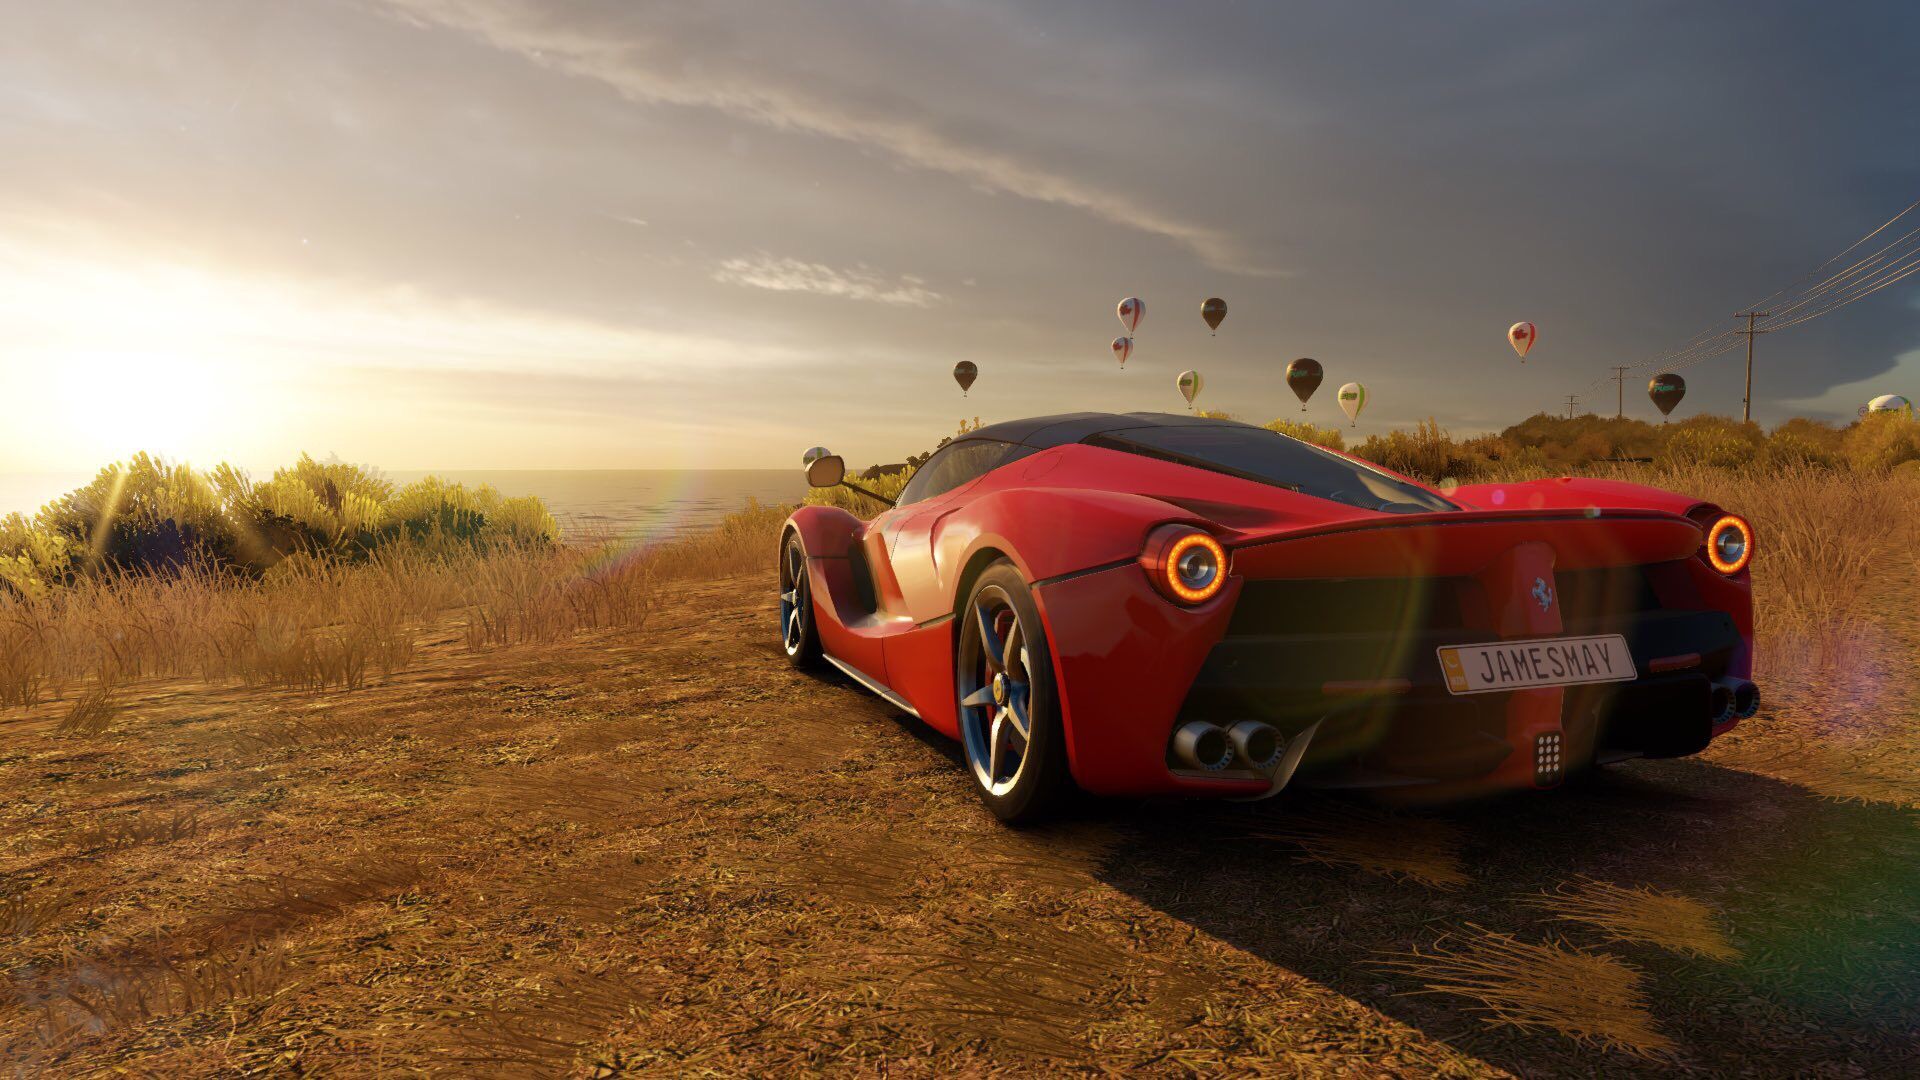 Ferrari LaFerrari - 2013 - Forza Horizon 2 - Test Drive Gameplay [HD] 